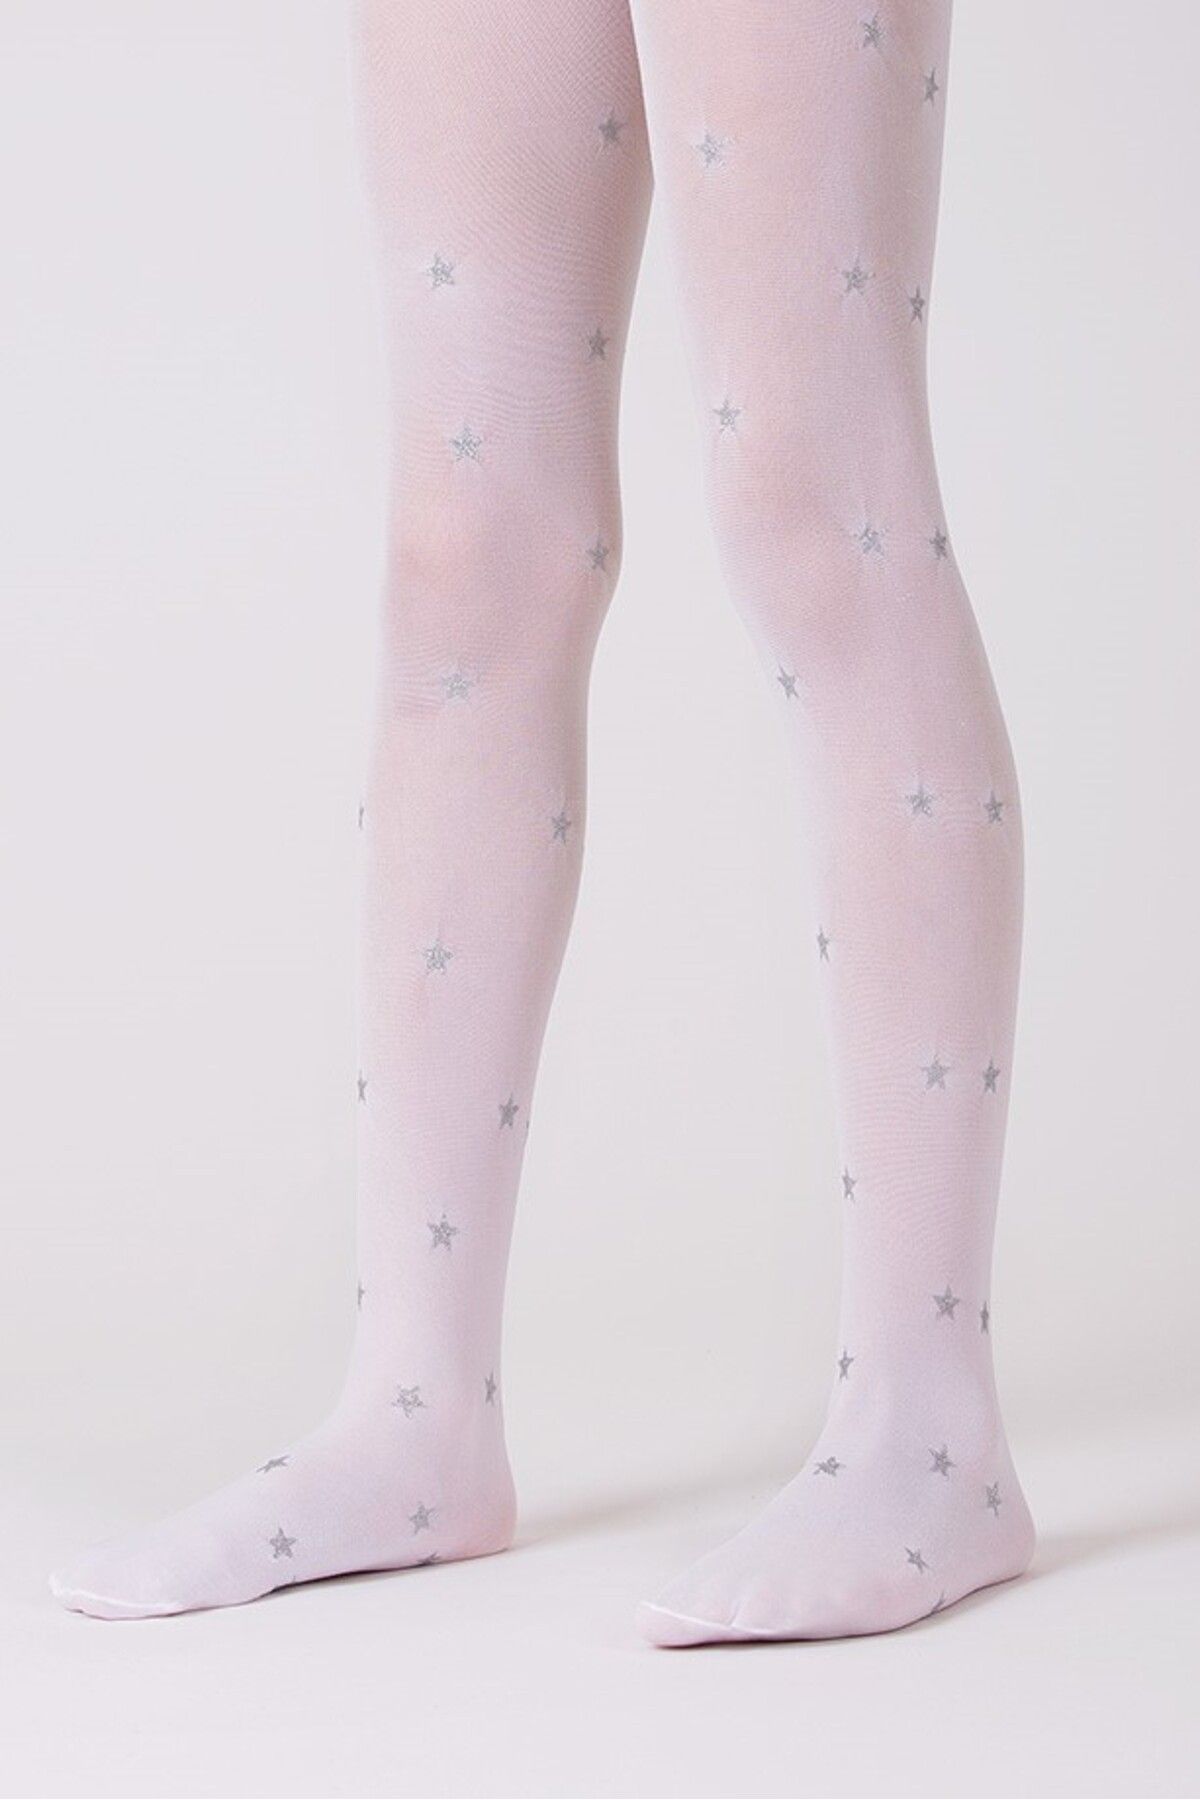 Goose Gümüş Yıldız Desenli Beyaz Kız Çocuk Külotlu Çorap